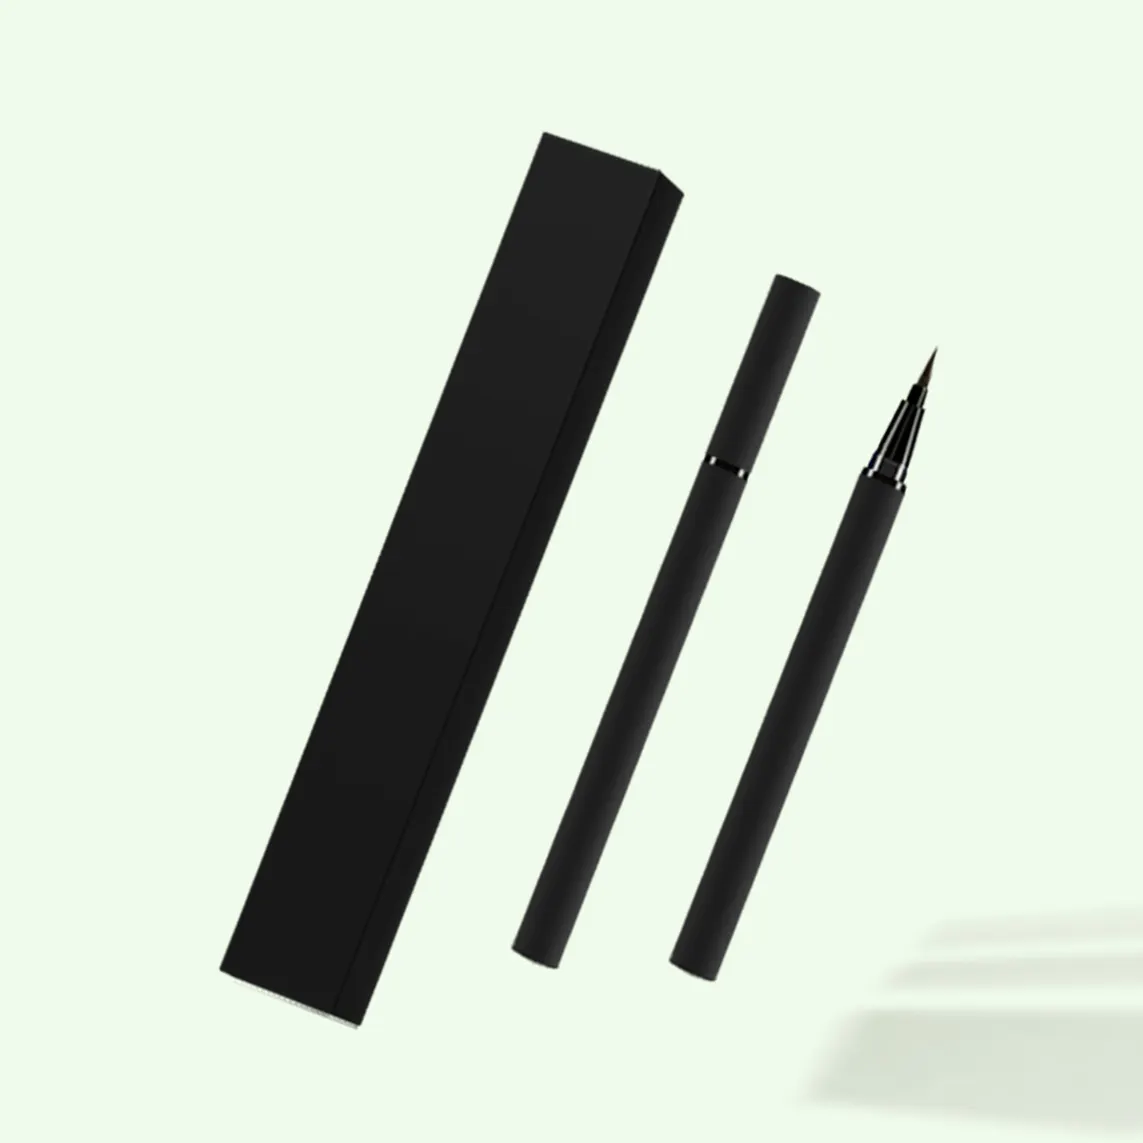 ดินสออายไลเนอร์สีดำกันน้ำอายไลเนอร์สีเบจสีนู้ดอายไลเนอร์อายไลเนอร์แบบ Kajal ออกแบบโลโก้ได้ตามต้องการ